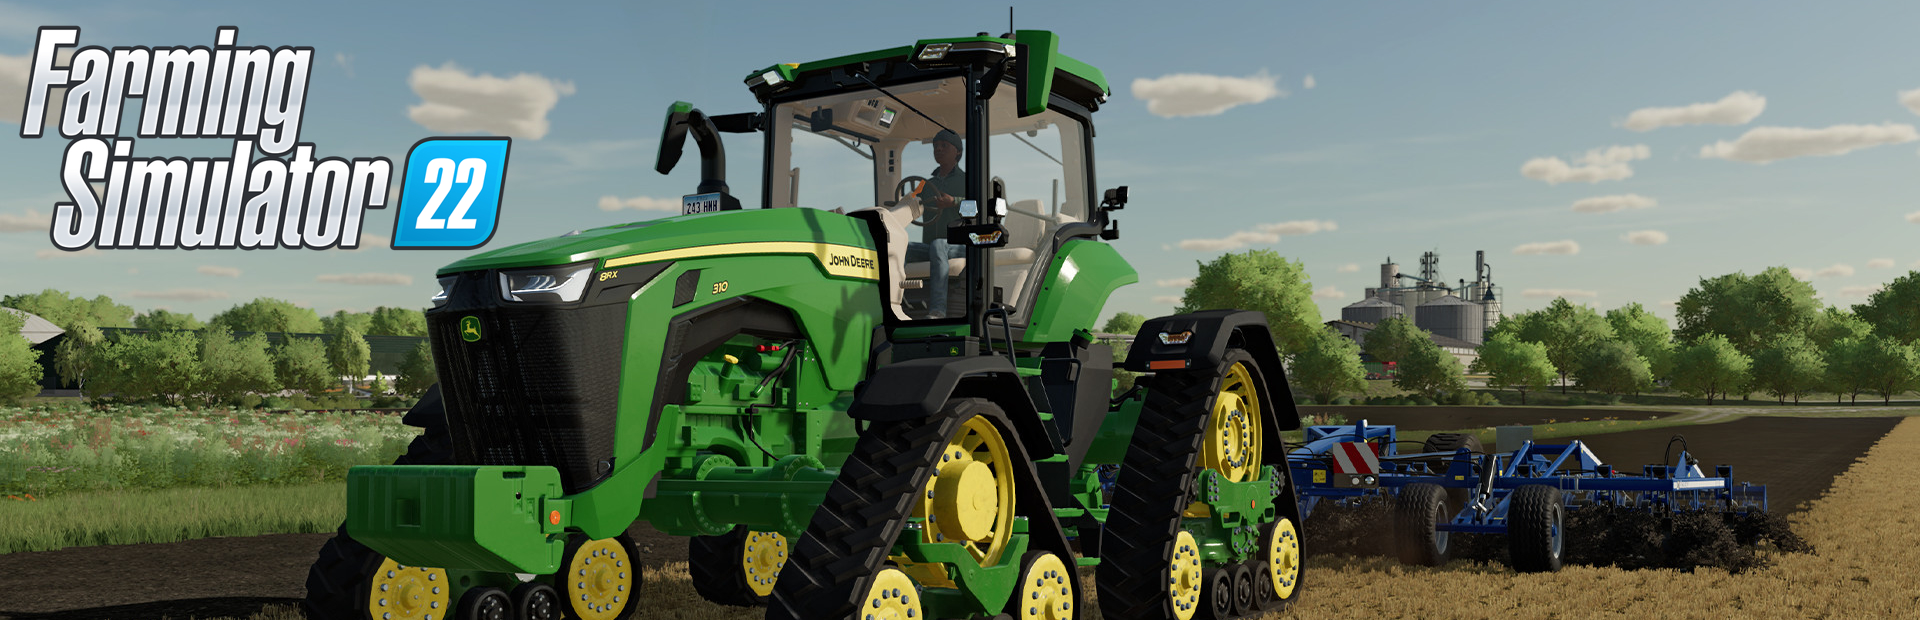 دانلود بازی Farming Simulator 22 برای پی سی | گیمباتو